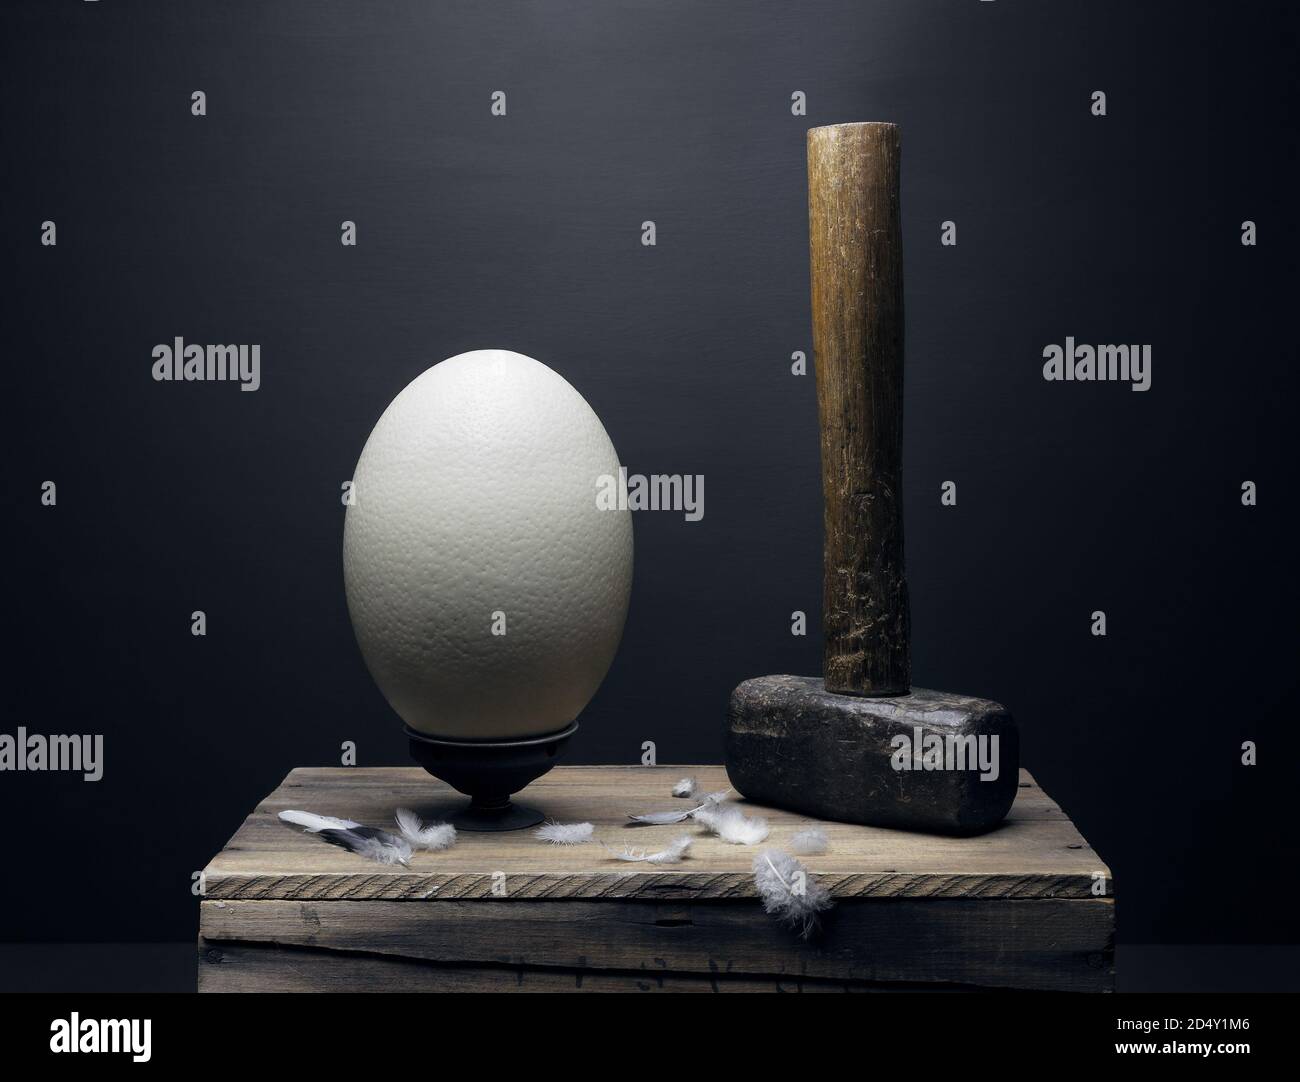 Huevo de avestruz y el arte de martillo sigue siendo la vida con plumas en una plataforma de madera creativamente creación de arte conceptual frágil versus irrompible. St Foto de stock